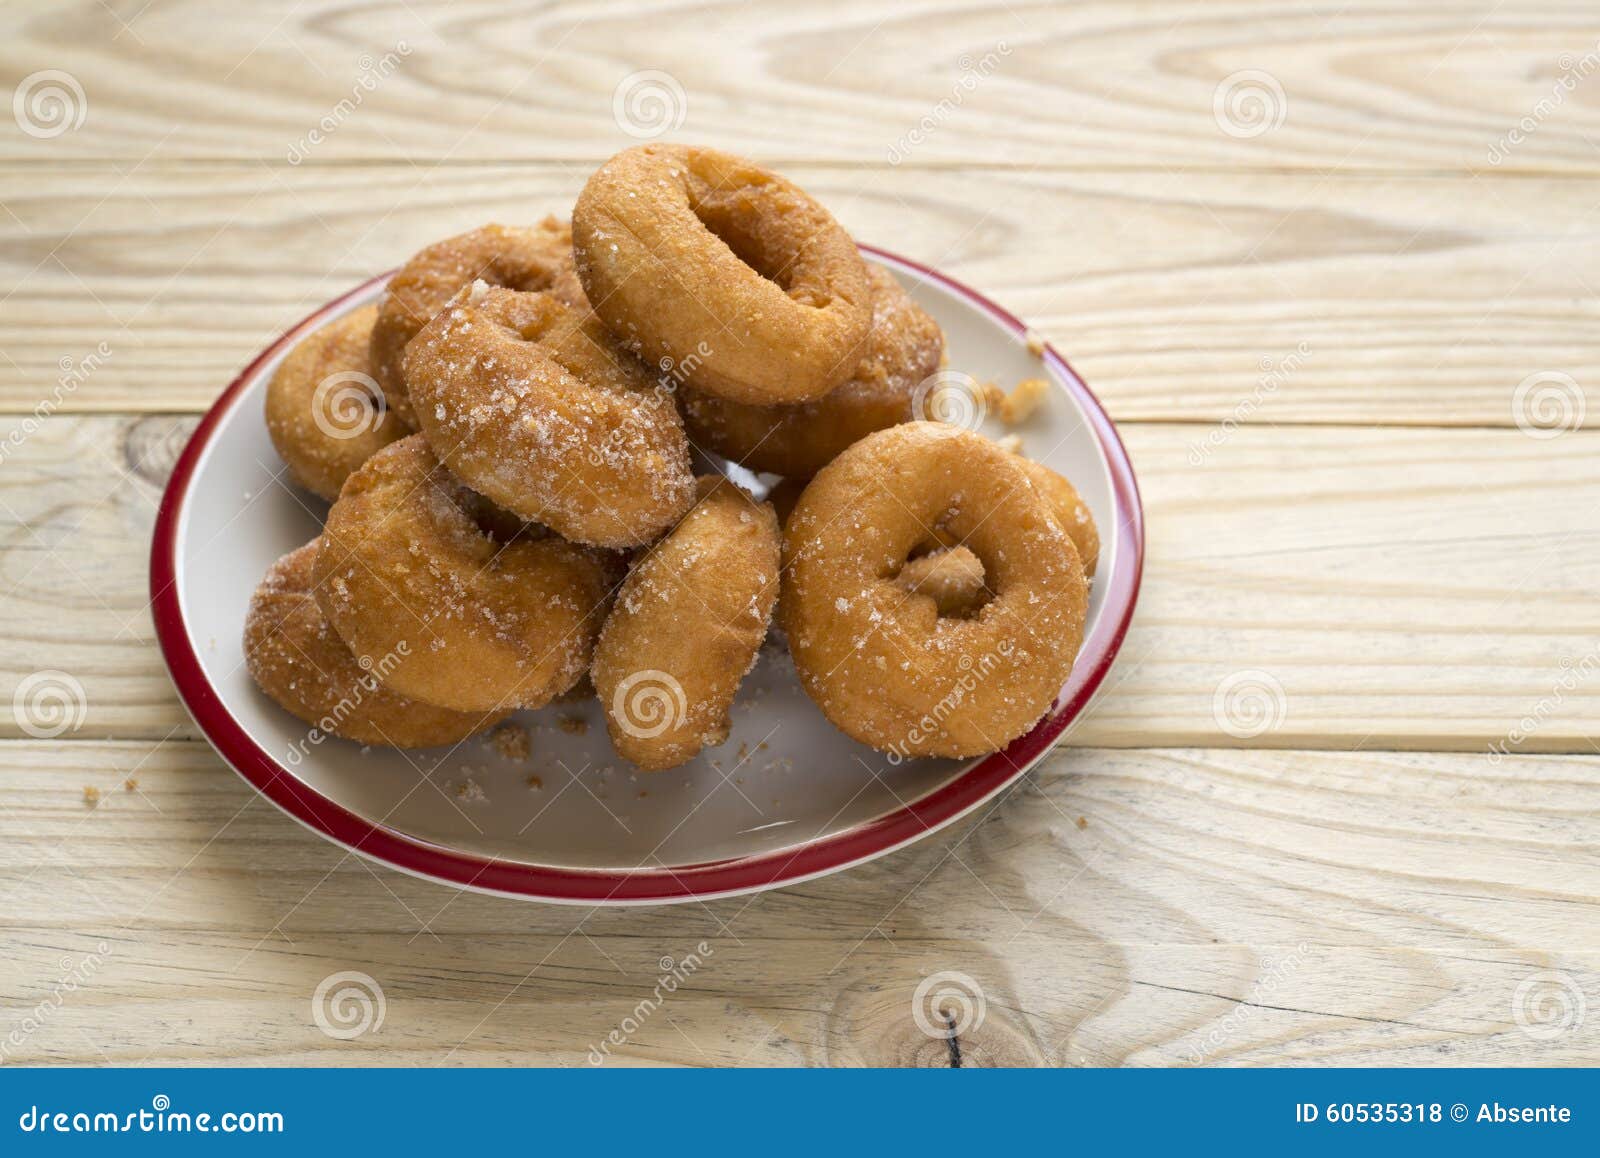 Σύνολο δίσκων των donuts στον ξύλινο πίνακα